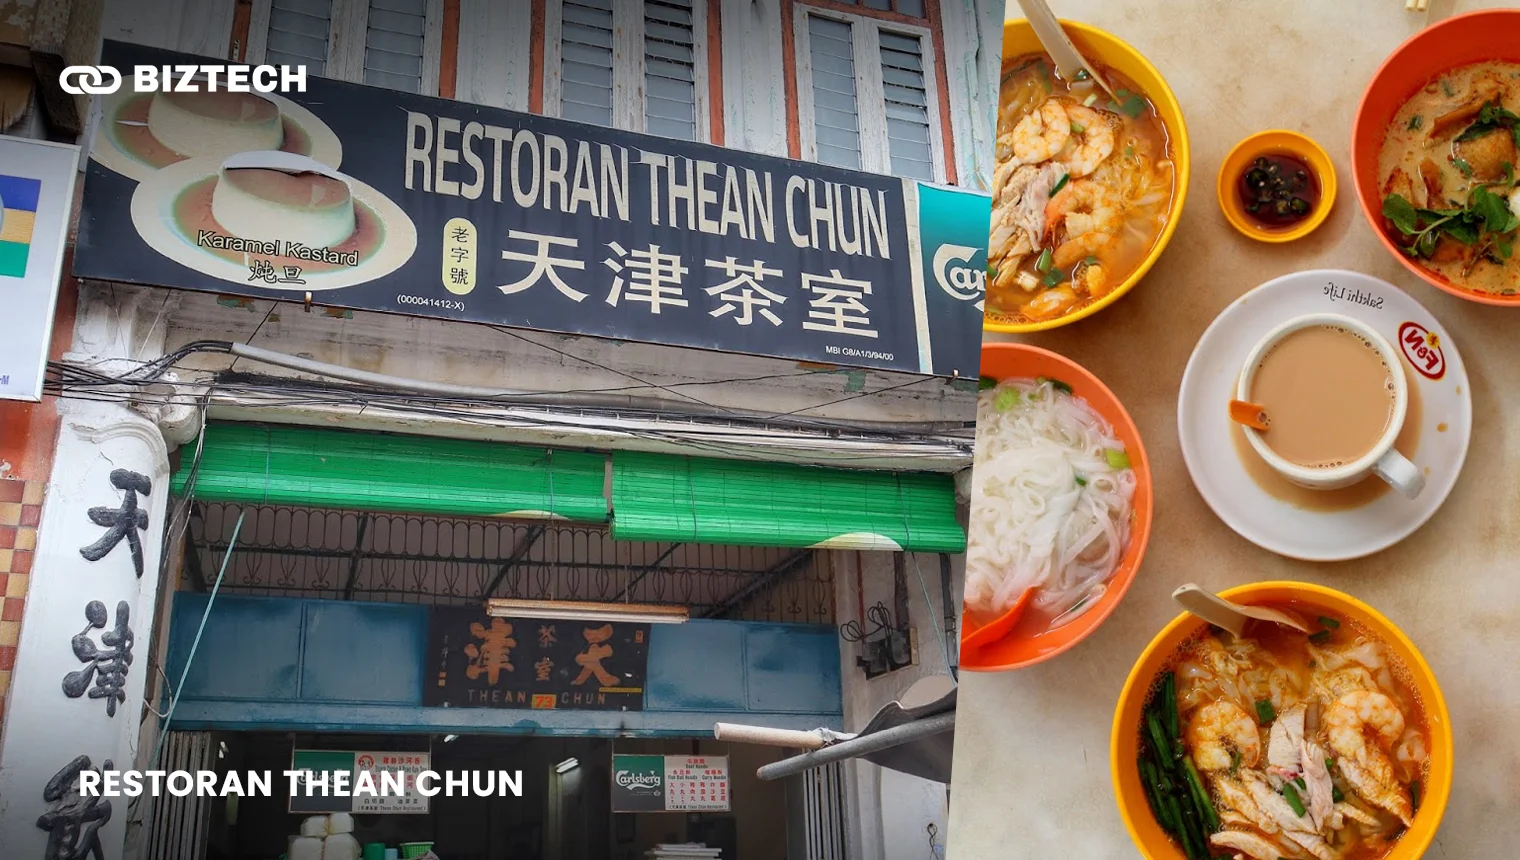 Restoran Thean Chun